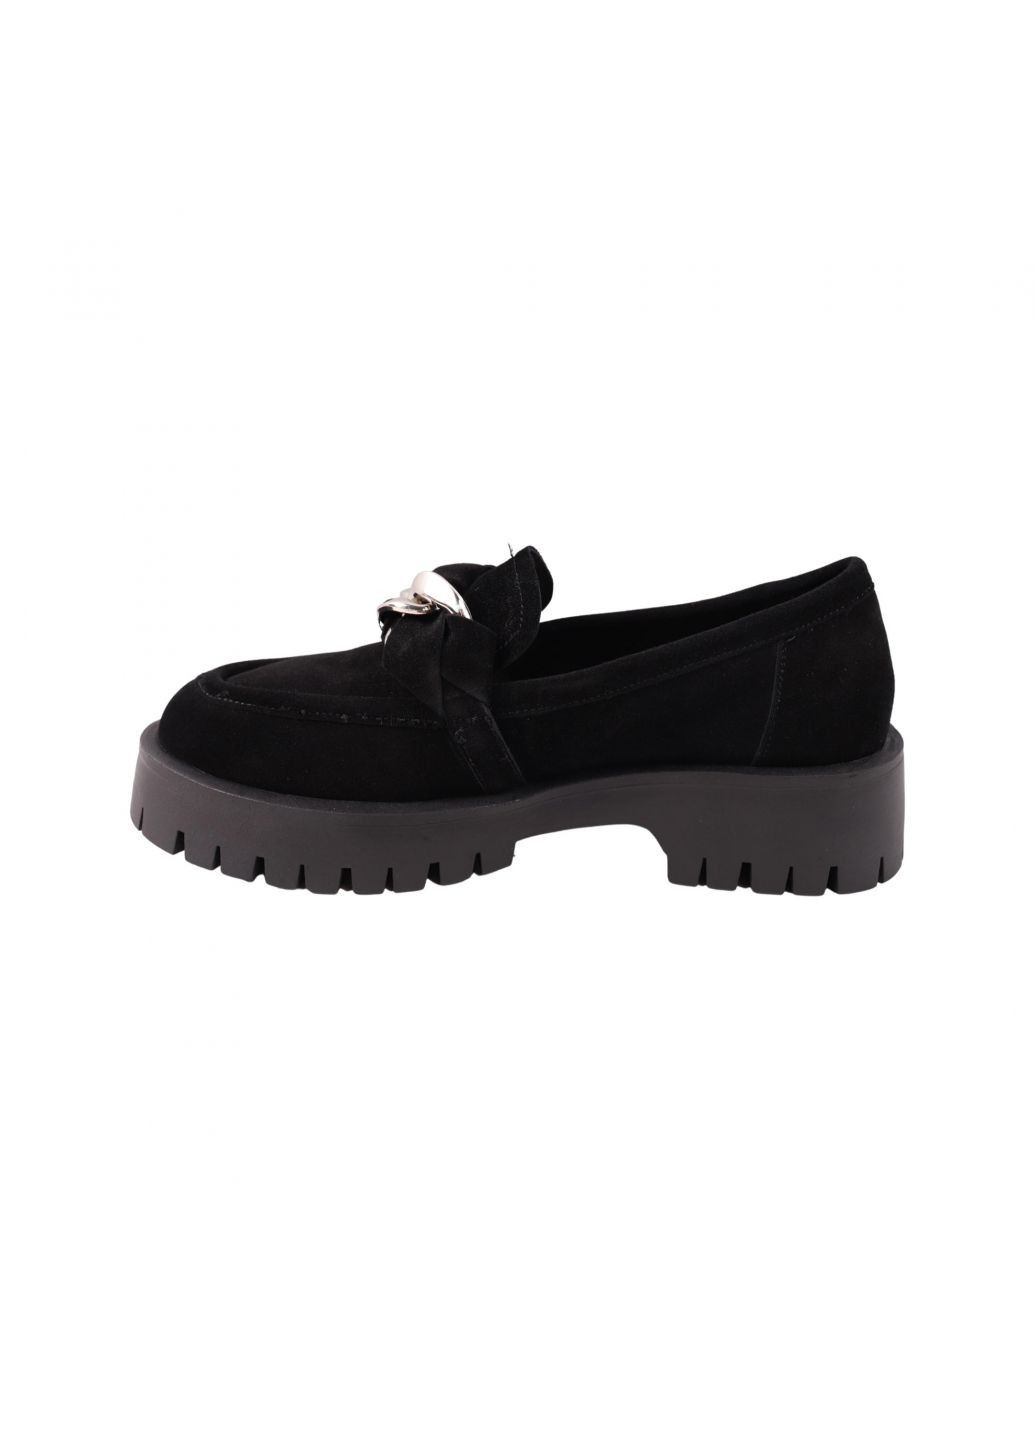 Туфлі жіночі чорні натуральна замша Melanda 202-23/24dtc (264828675)